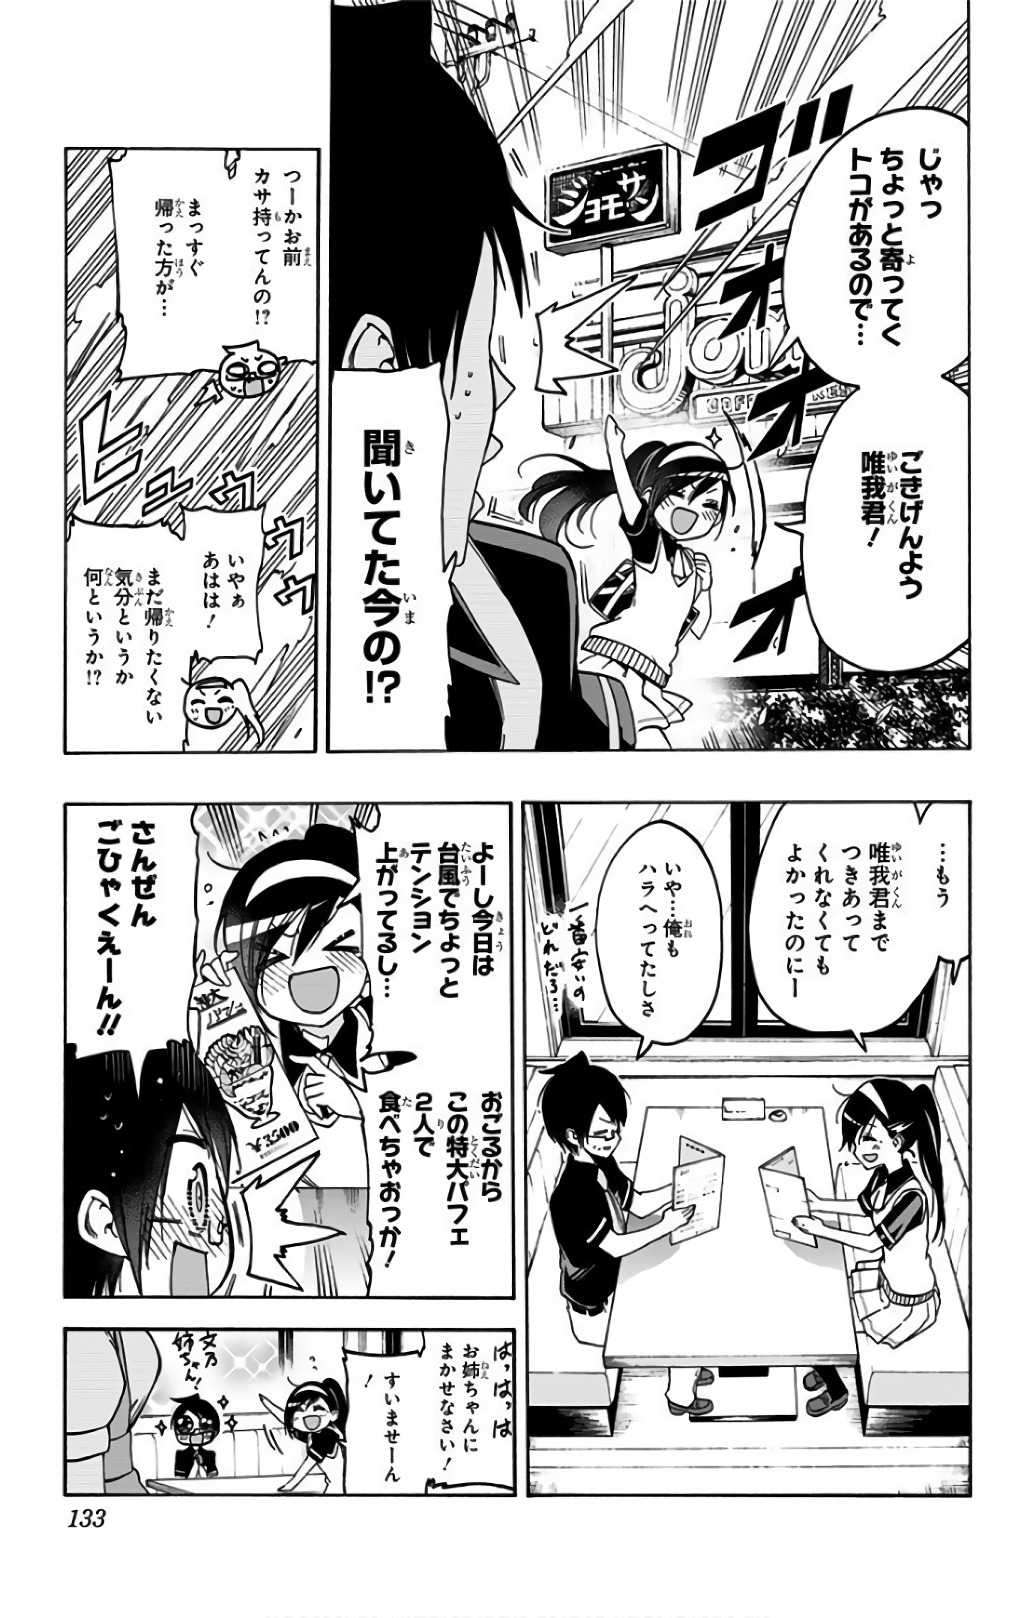 Bokutachi wa Benkyou ga Dekinai - Chapter 58 - Page 3